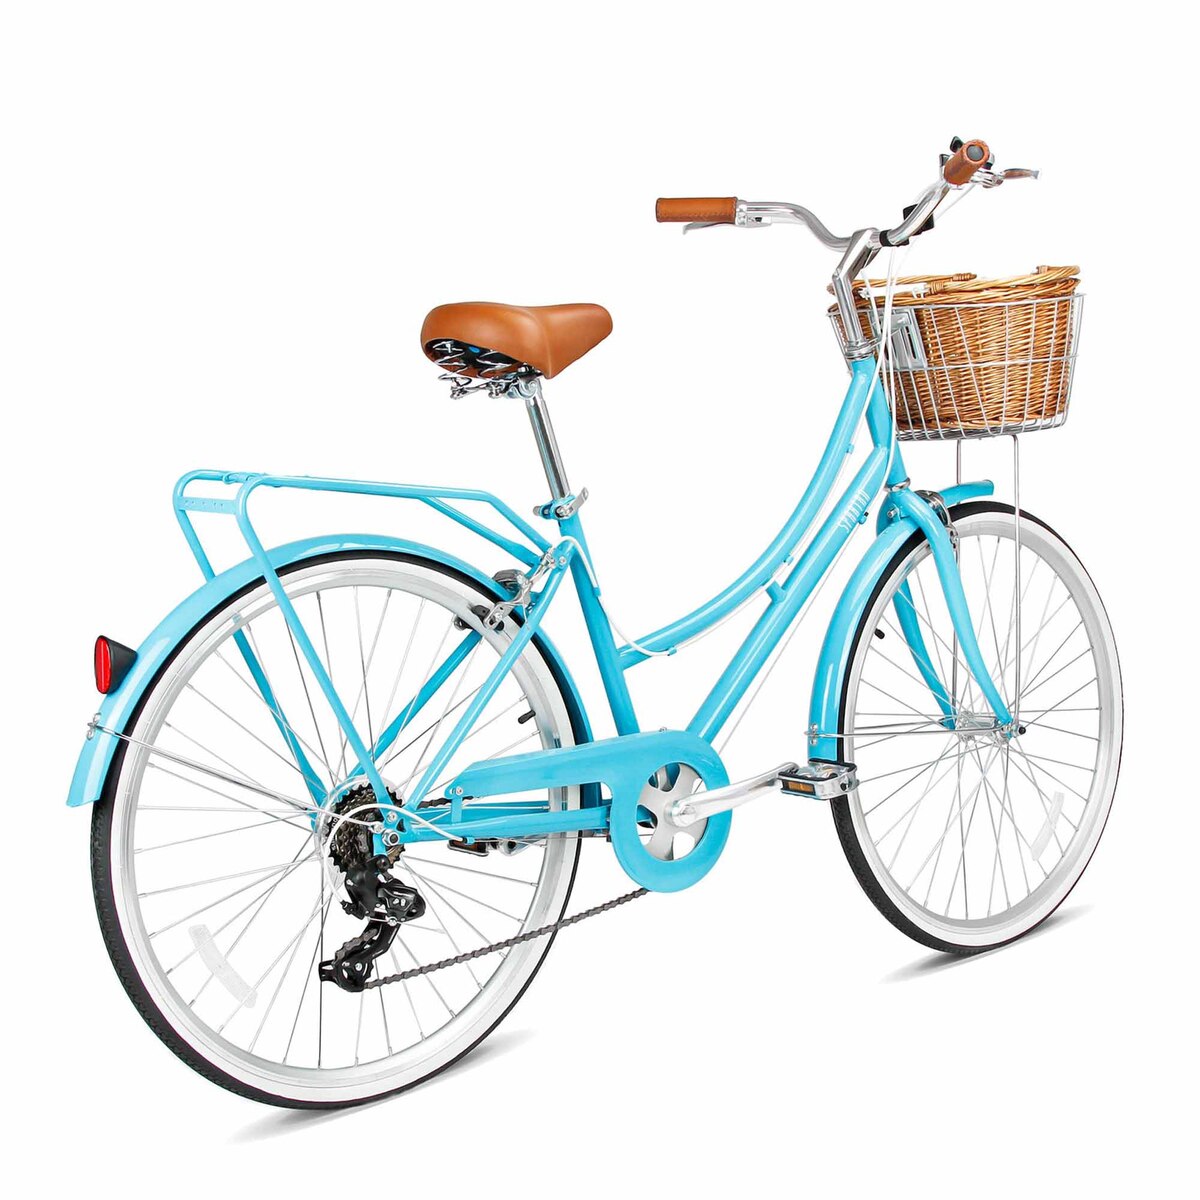 Spartan 700c Platinum Women's City Bicycle, Medium, Turquoise, SP-3126-M